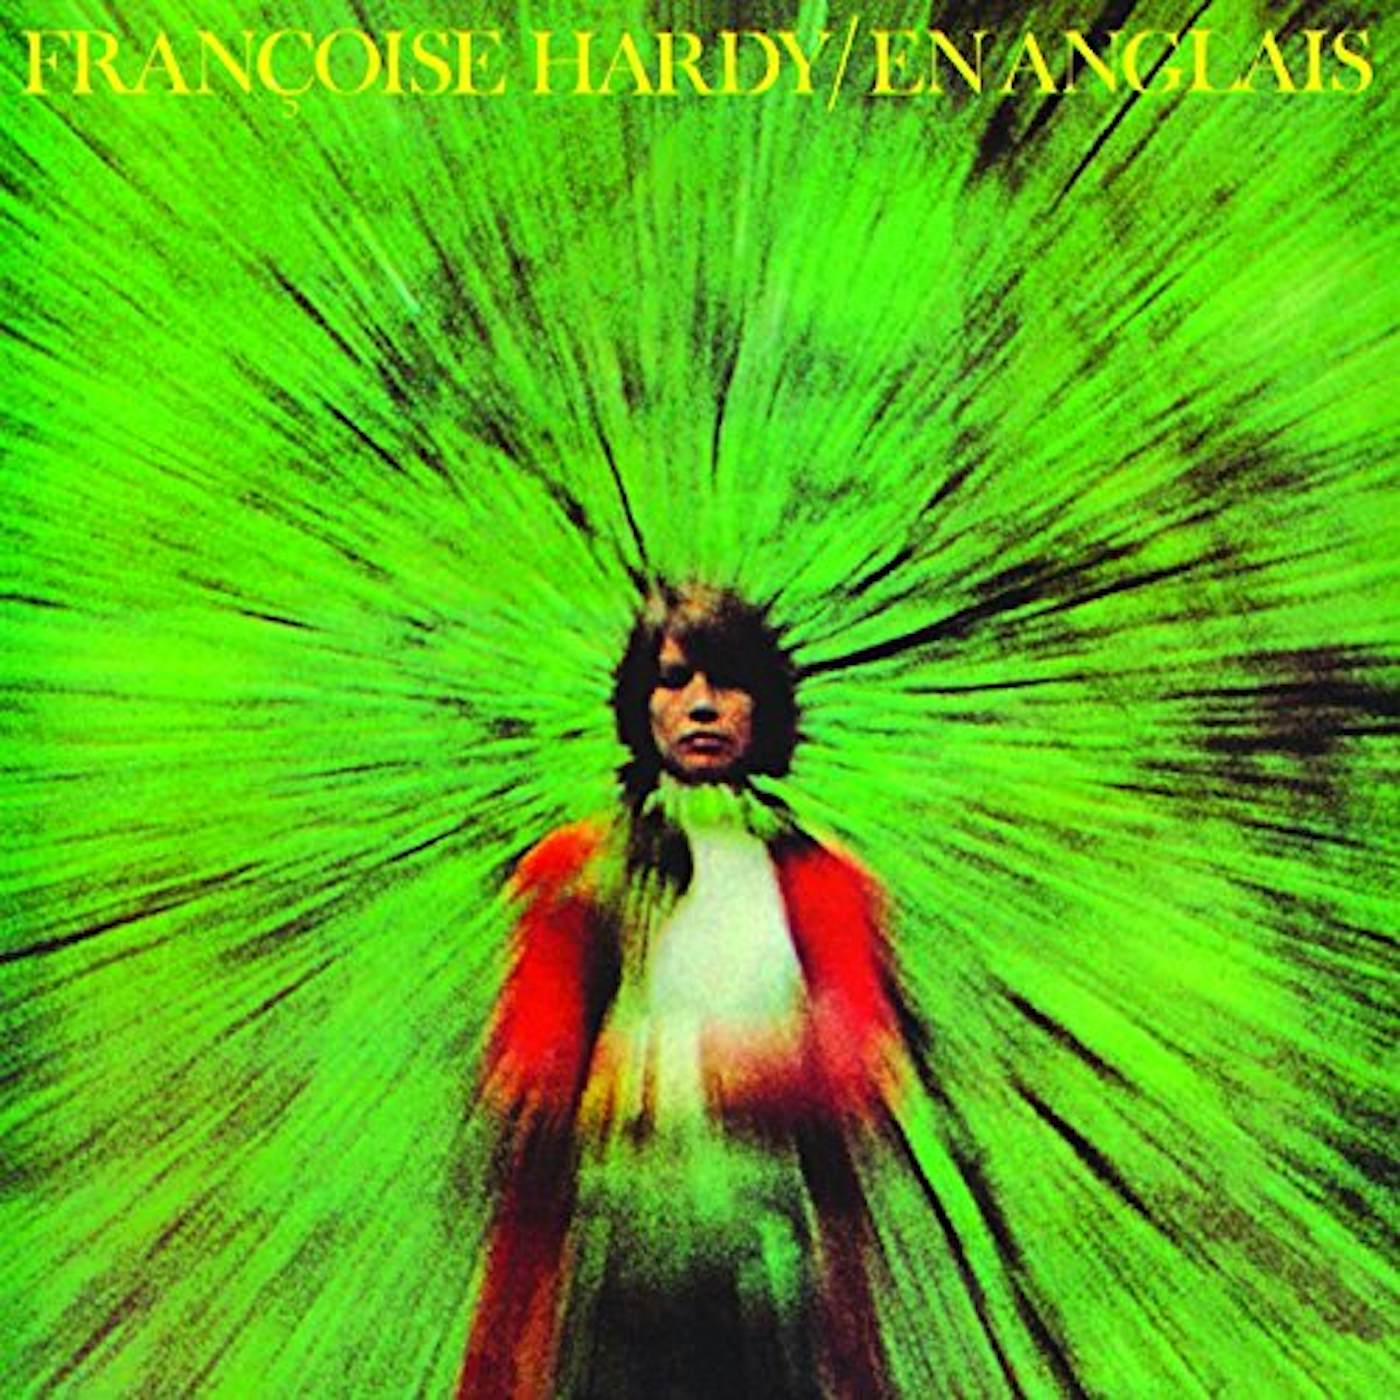 Françoise Hardy En Anglais Vinyl Record